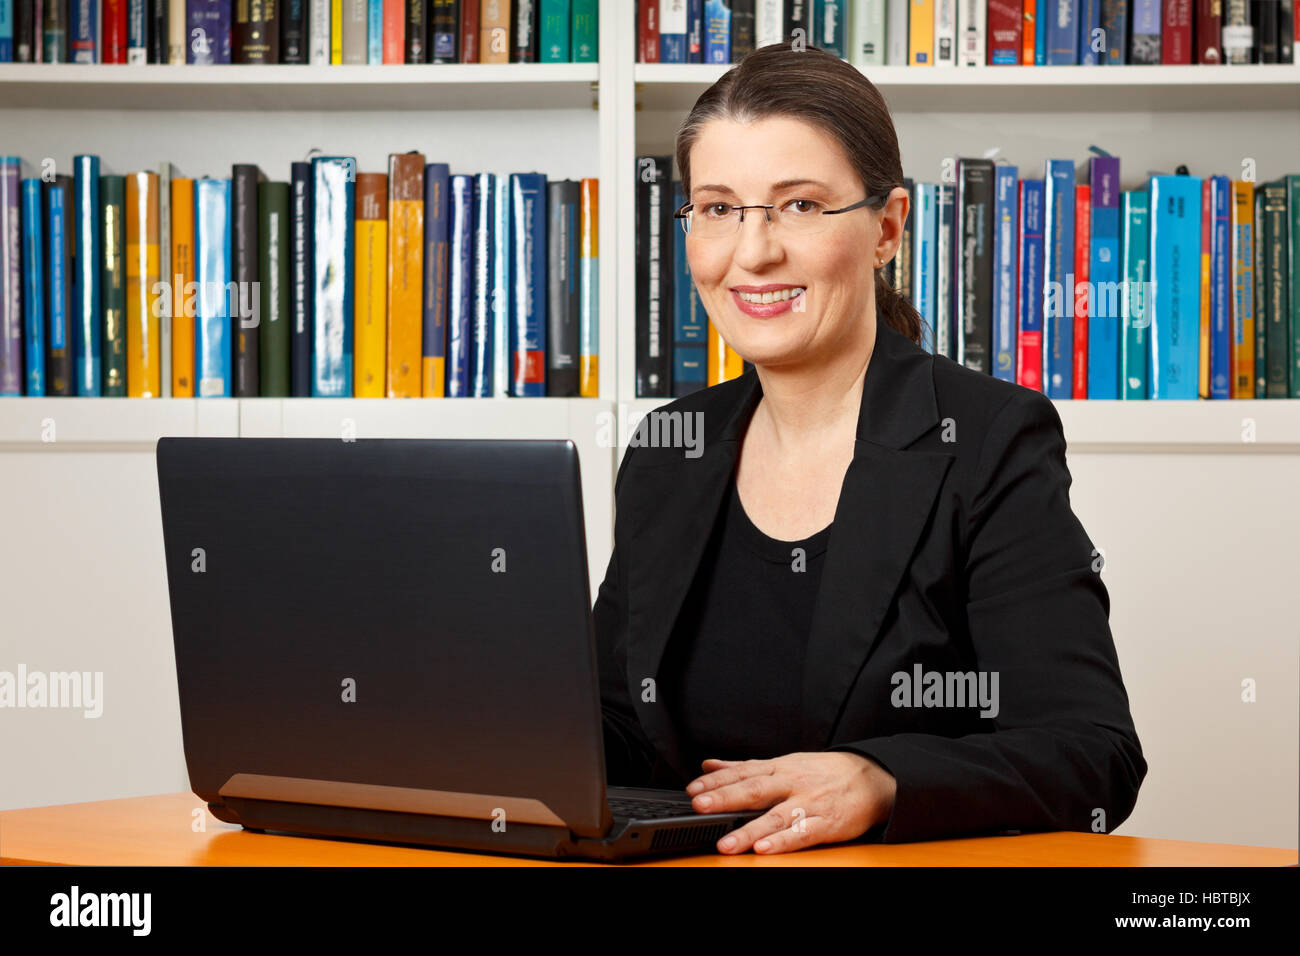 Amable mujer sonriente delante de su laptop en una biblioteca, maestro, tutor, profesor, consultor, consultoría Foto de stock